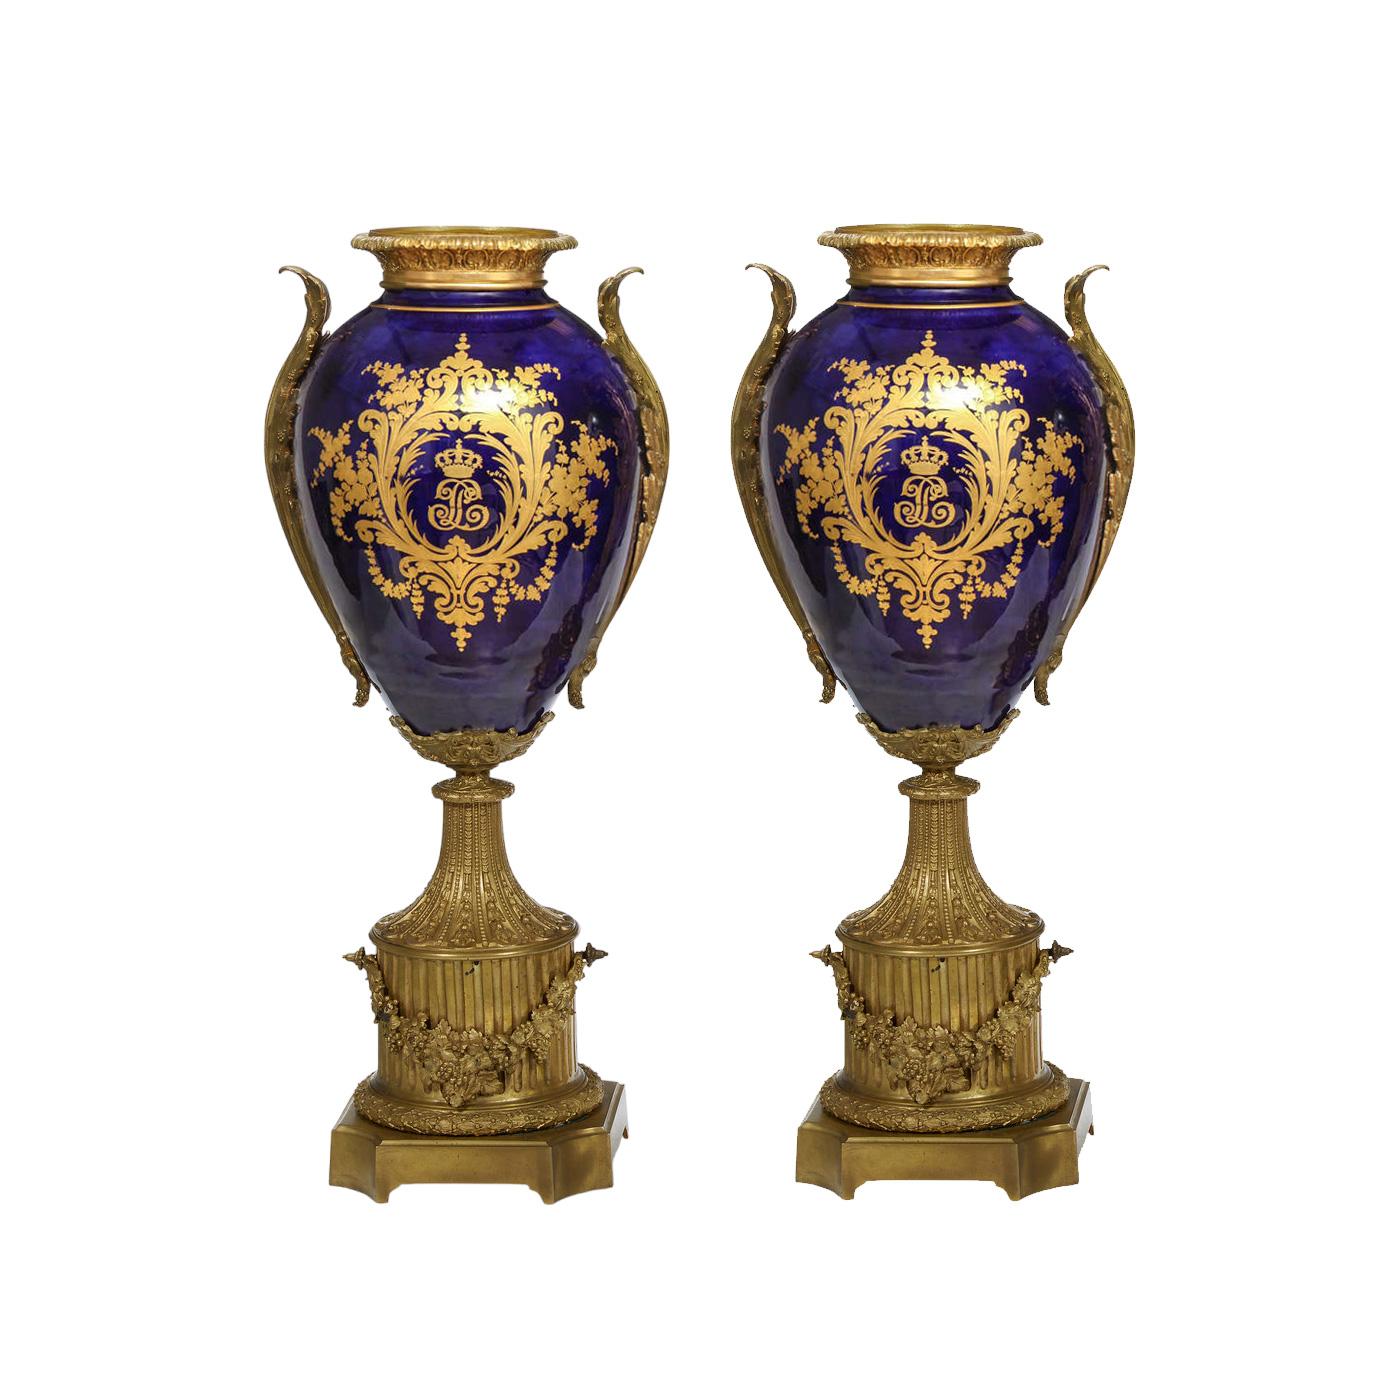 Dieses beeindruckende Paar monumentaler antiker Porzellanvasen ist ein Zeugnis für die Opulenz französischer Handwerkskunst im Stil des Sèvres-Porzellans, das um 1850 entstanden ist. Die Vasen haben eine traditionelle Balusterform. Die eine Seite